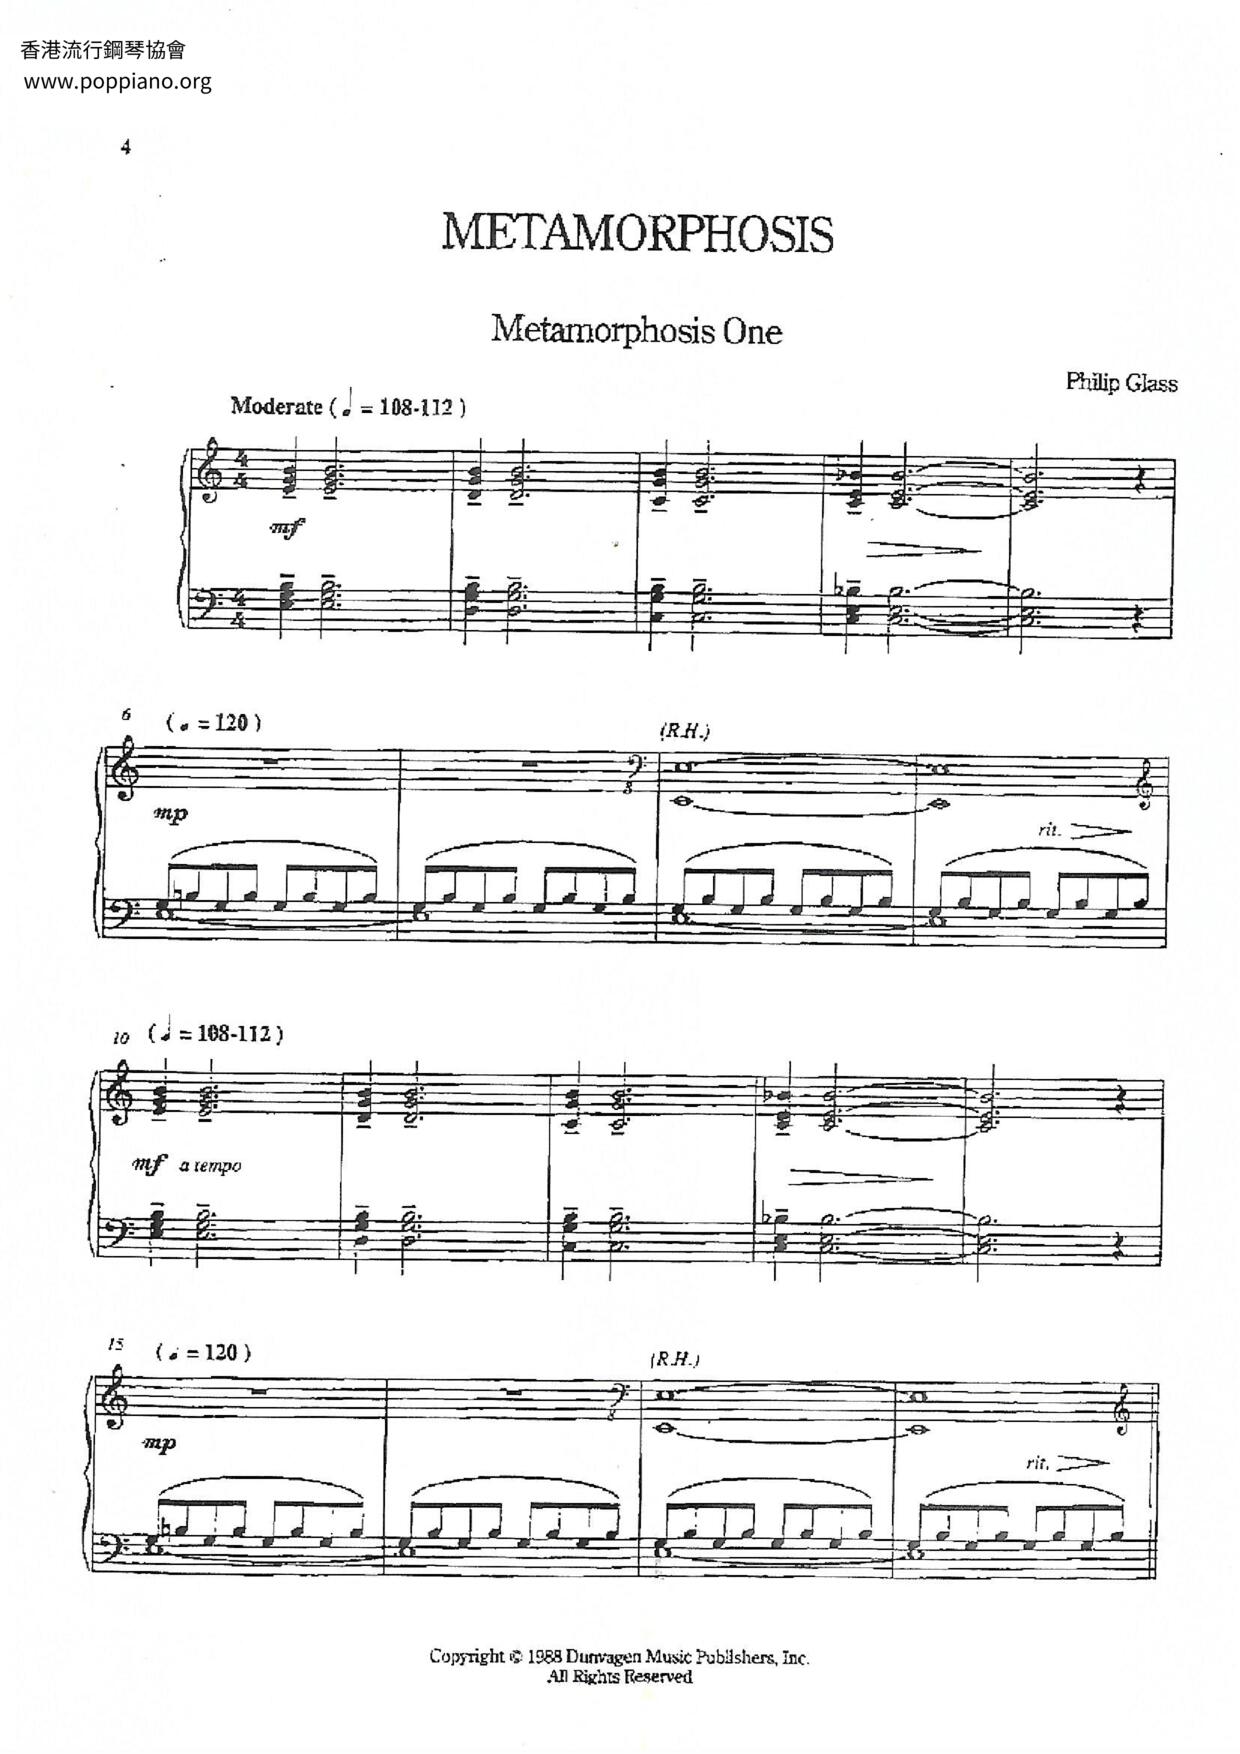 Metamorphosis Score